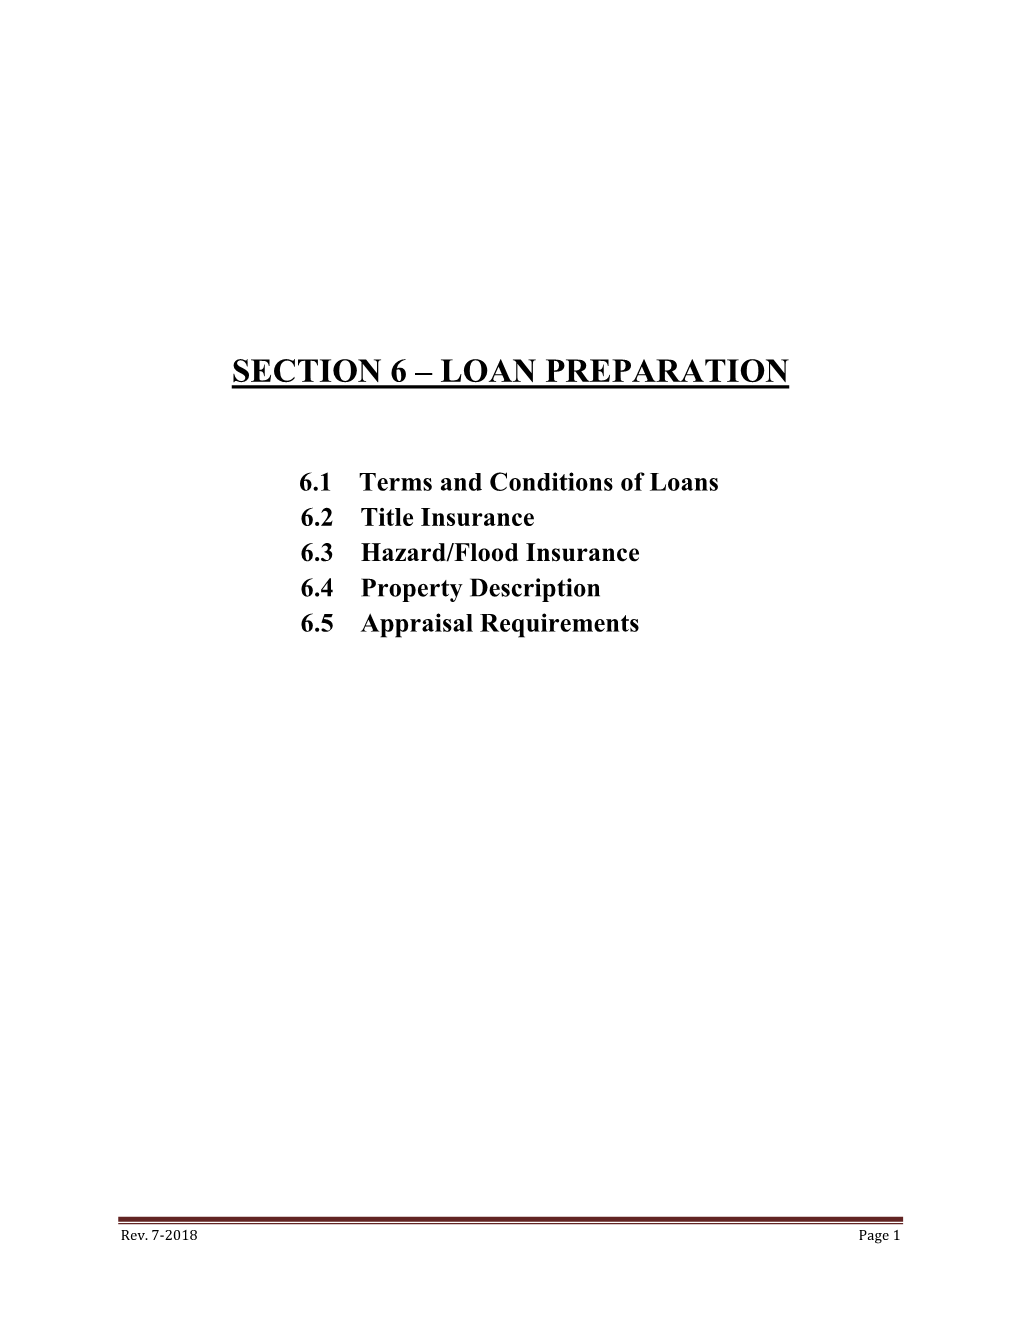 Loan Preparation